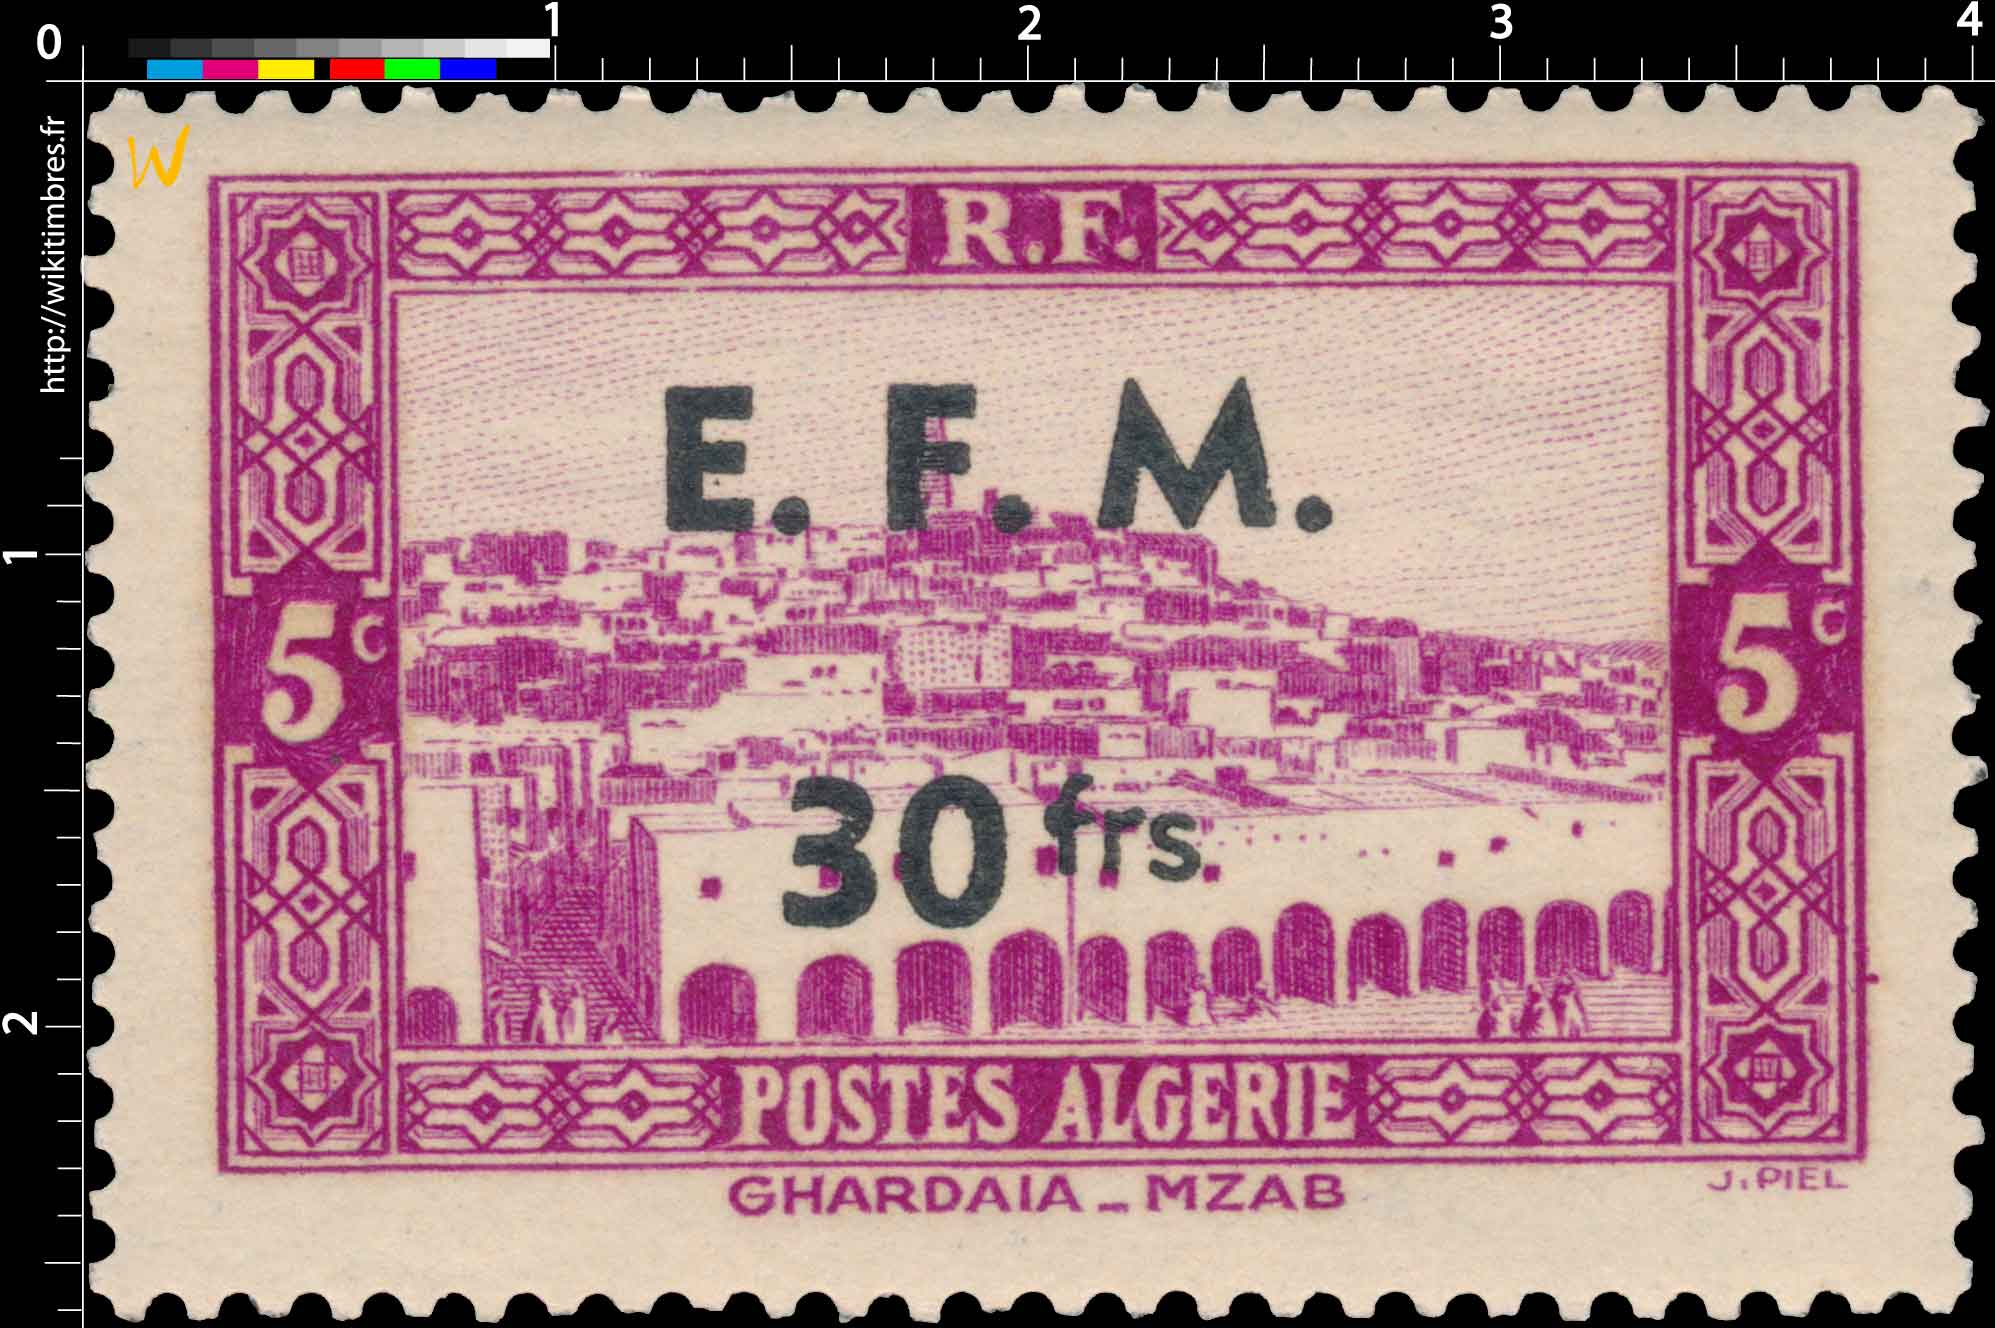 Algérie - Ghardaia - Mzab